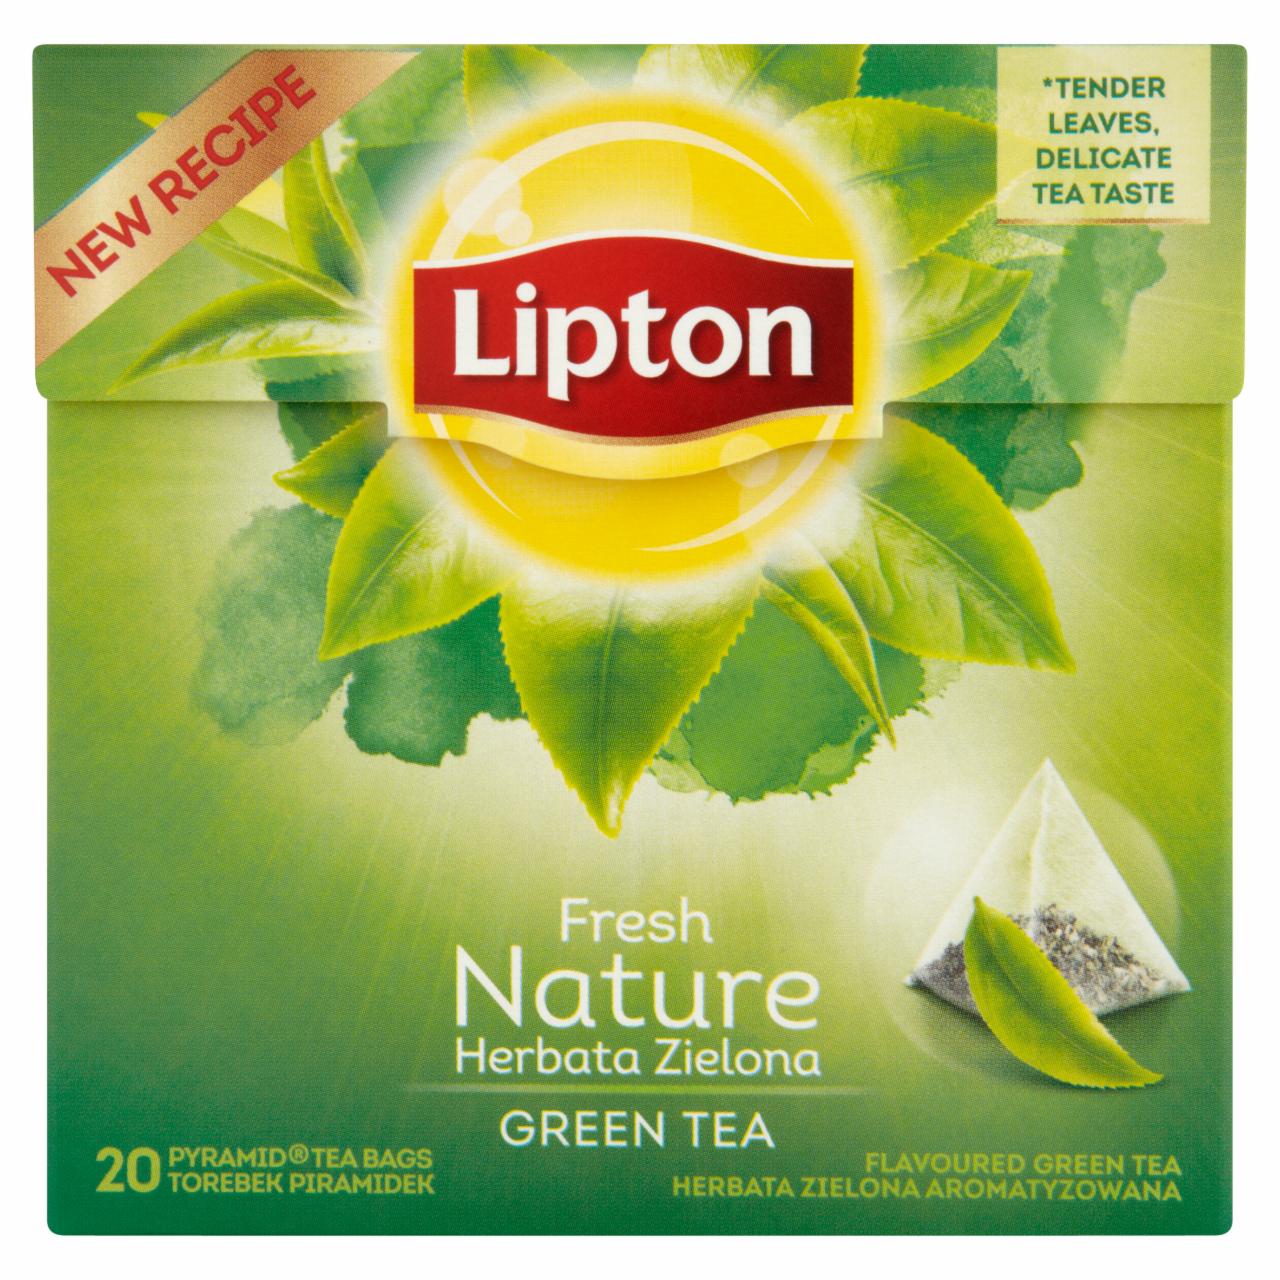 Zdjęcia - Lipton Fresh Nature Herbata zielona aromatyzowana 28 g (20 torebek)